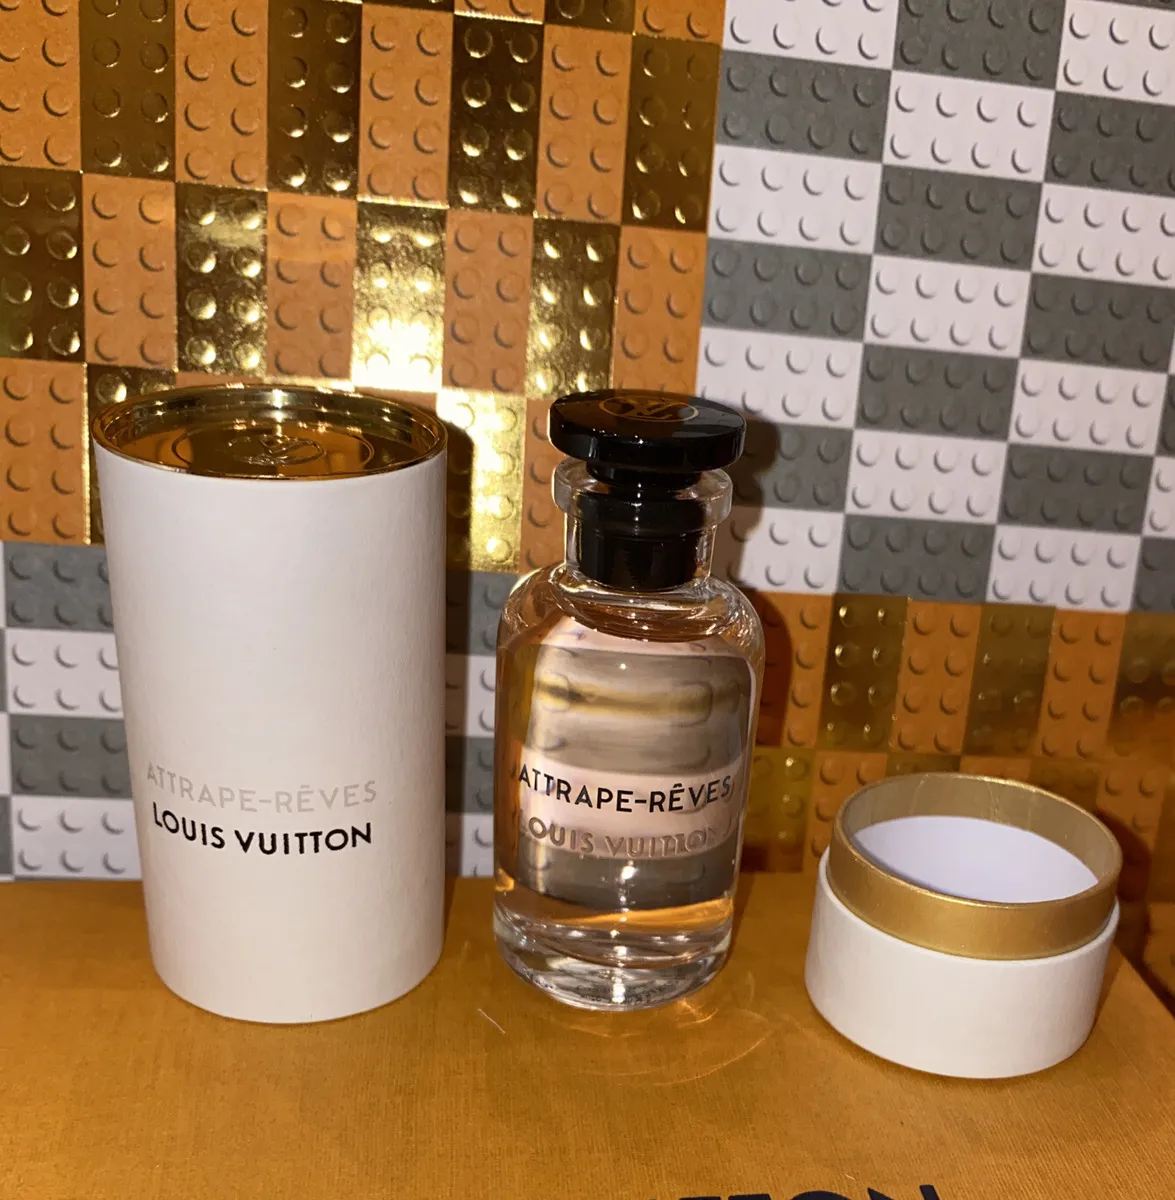 New LOUIS VUITTON ATTRAPE REVES 10 Ml Eau de Parfum Perfume Travel Mini  Bottle